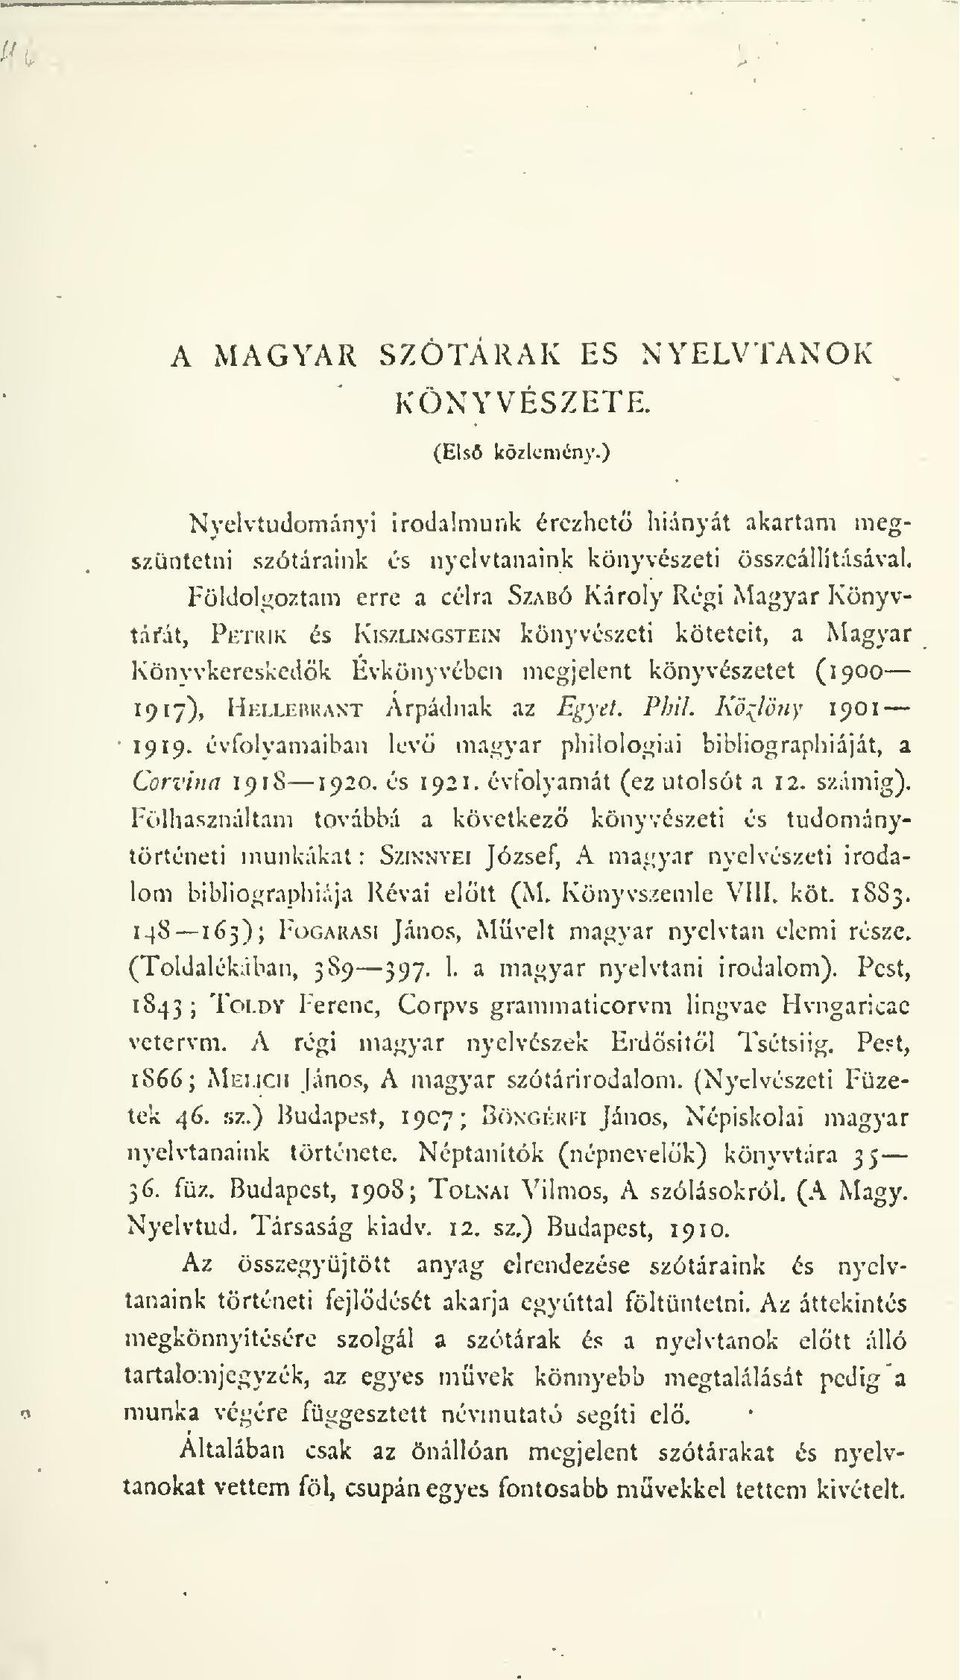 Árpádnak az Egyet. Phil. Kö::^lötiY 1901 évfolyamaiban lev mag}'ar philologiai bibliographiáját, a Corvina 1918 1920. és 1921. évfolyamát (ez utolsót a 12. számig).